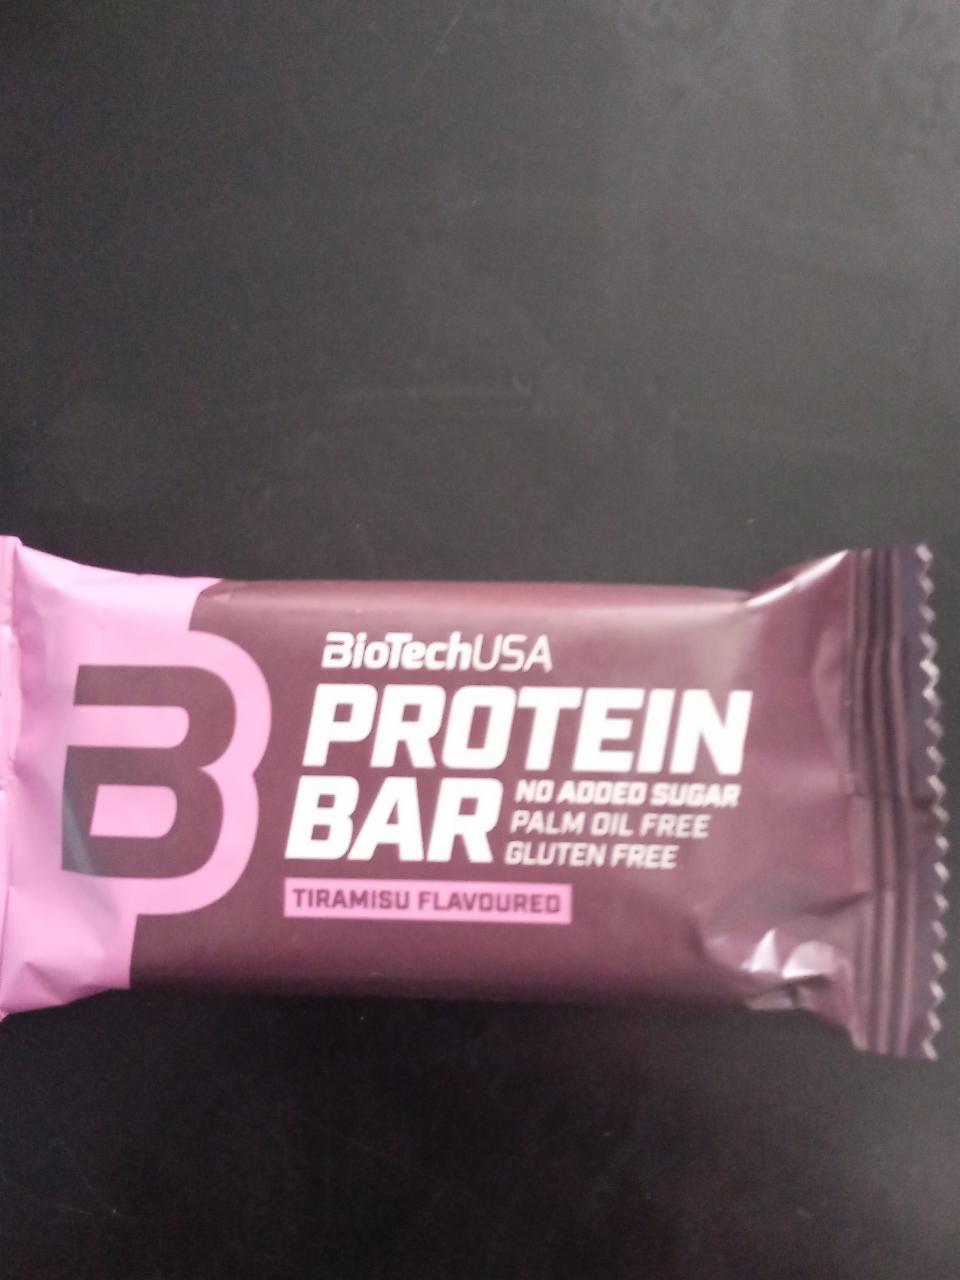 Zdjęcia - protein bar biotechusa